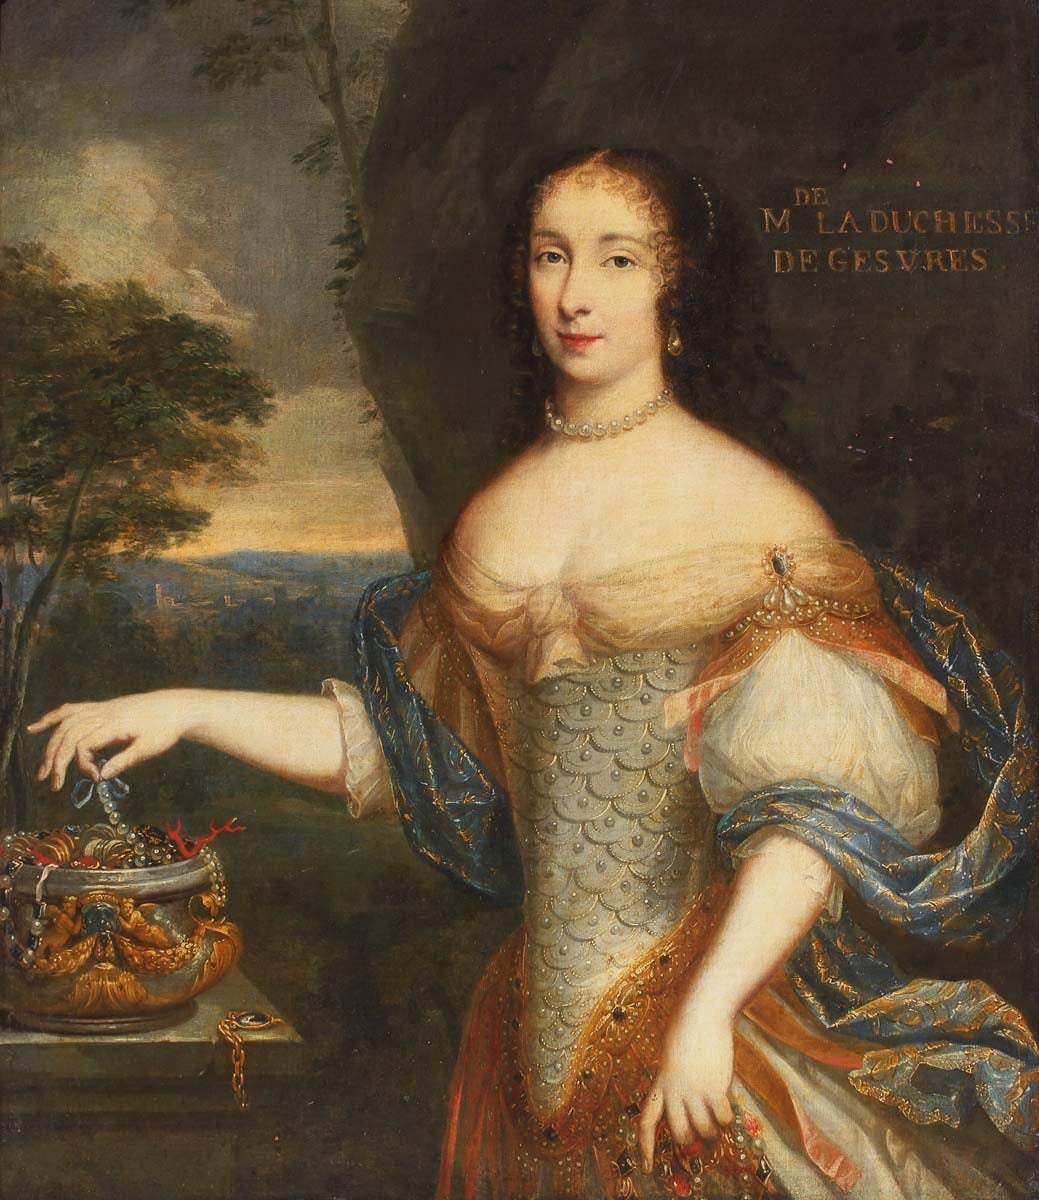 Portrait Painting Charles Beaubrun - Portrait de la duchesse de Gesvres